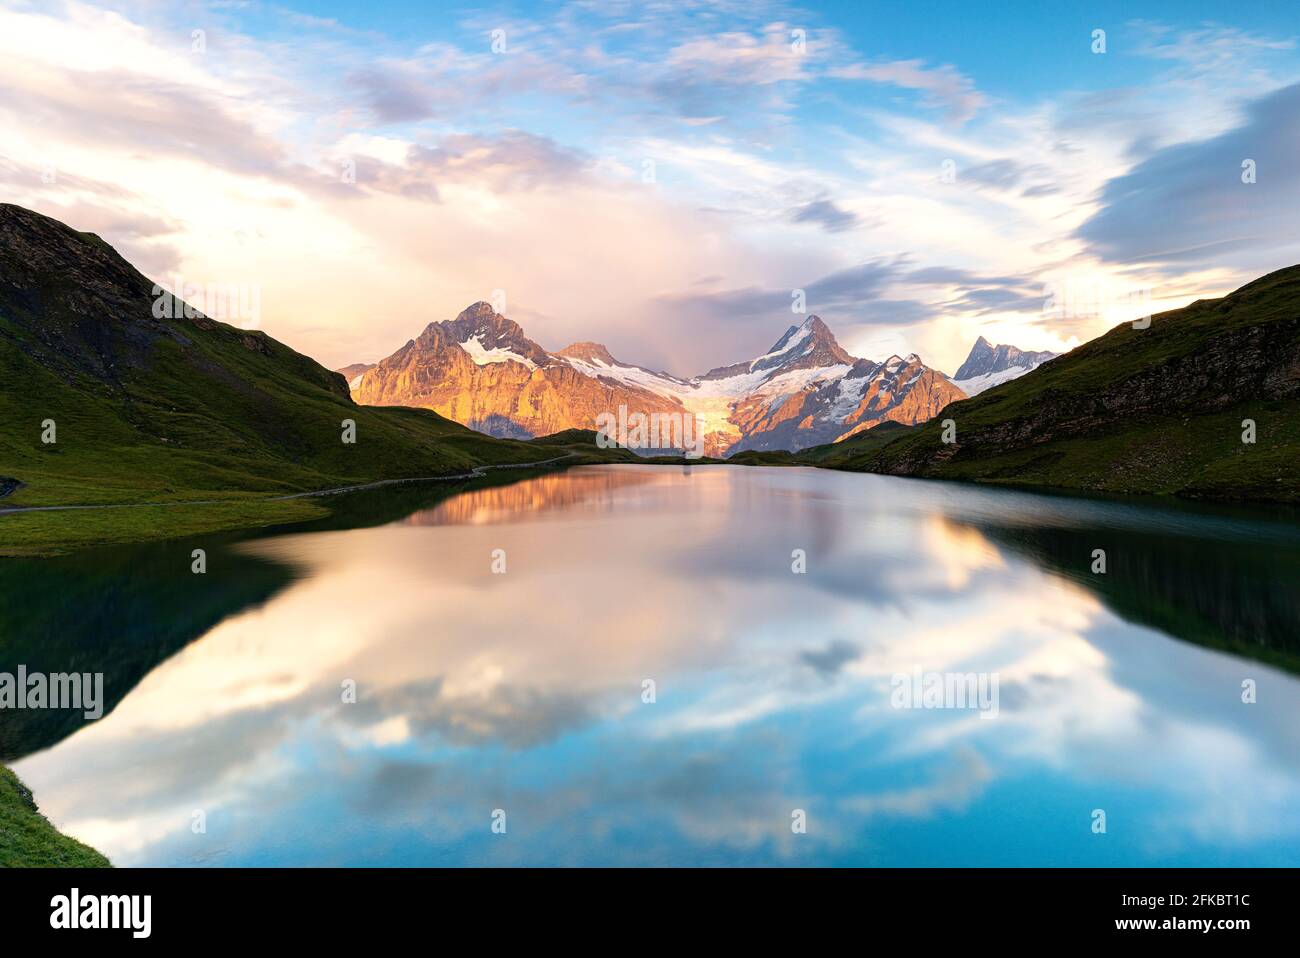 Schreckhorn und Bachalpsee bei Sonnenuntergang, Grindelwald, Berner Oberland, Kanton Bern, Schweiz, Europa Stockfoto